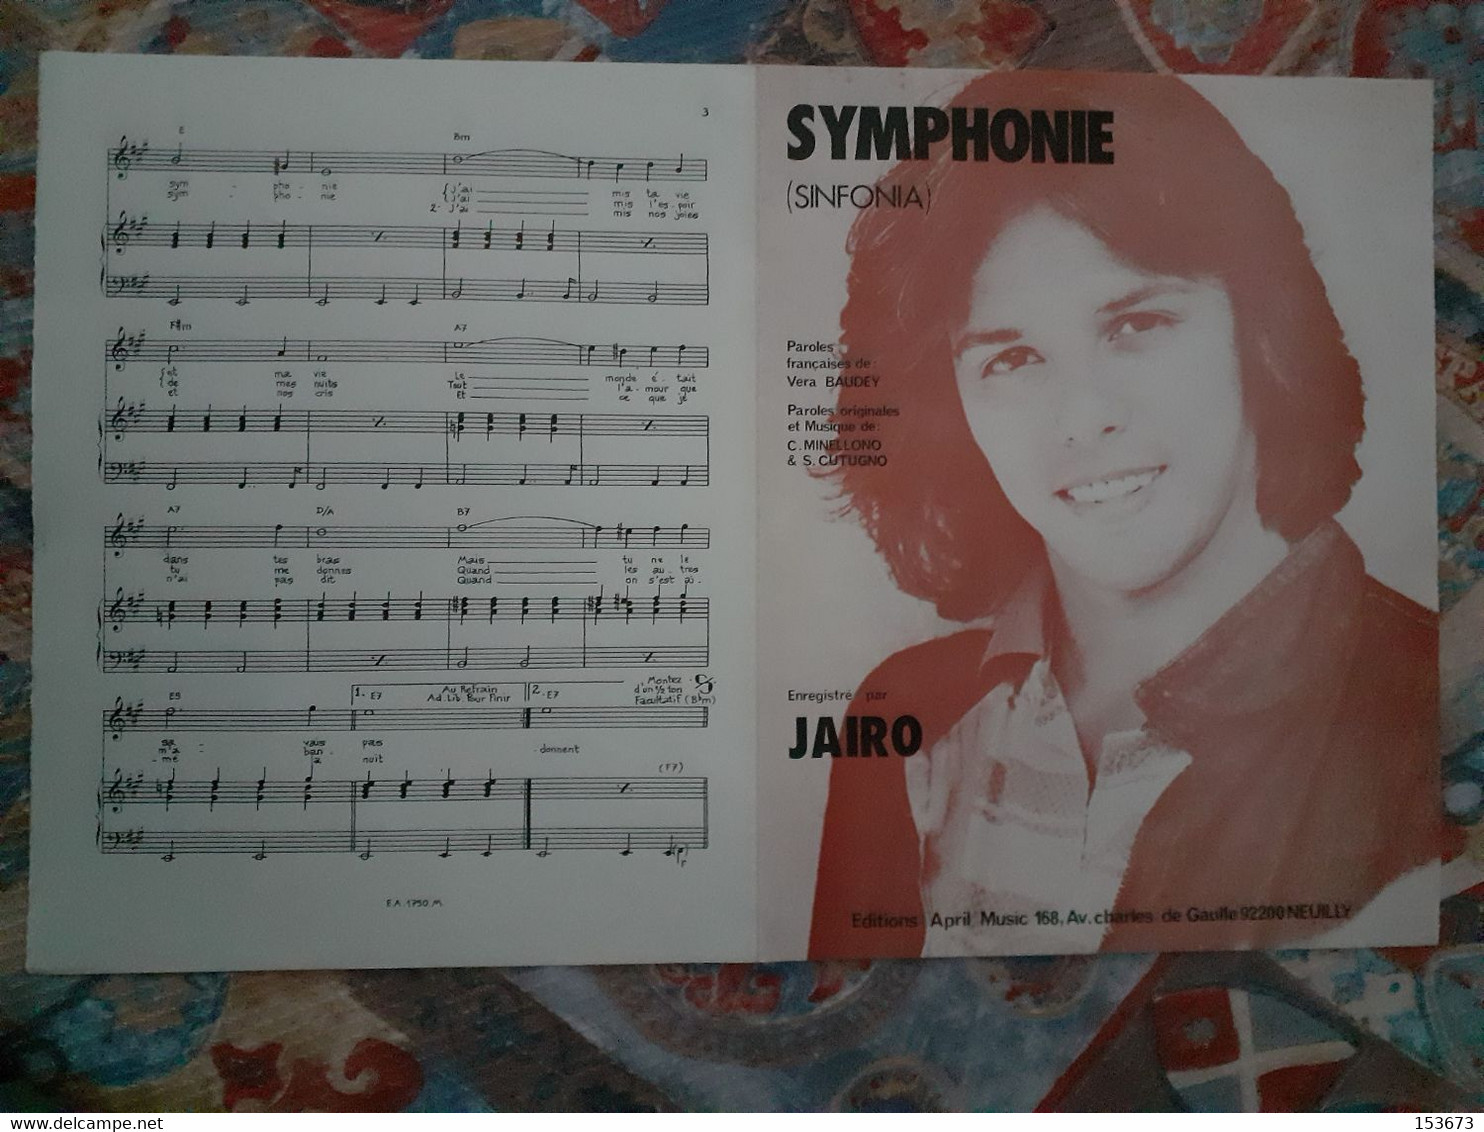 Partition "SYMPHONIE (Sinfonia)" éditions April Music - Neuilly 1981, Enregistré Par JAIRO. - Zang (solo)